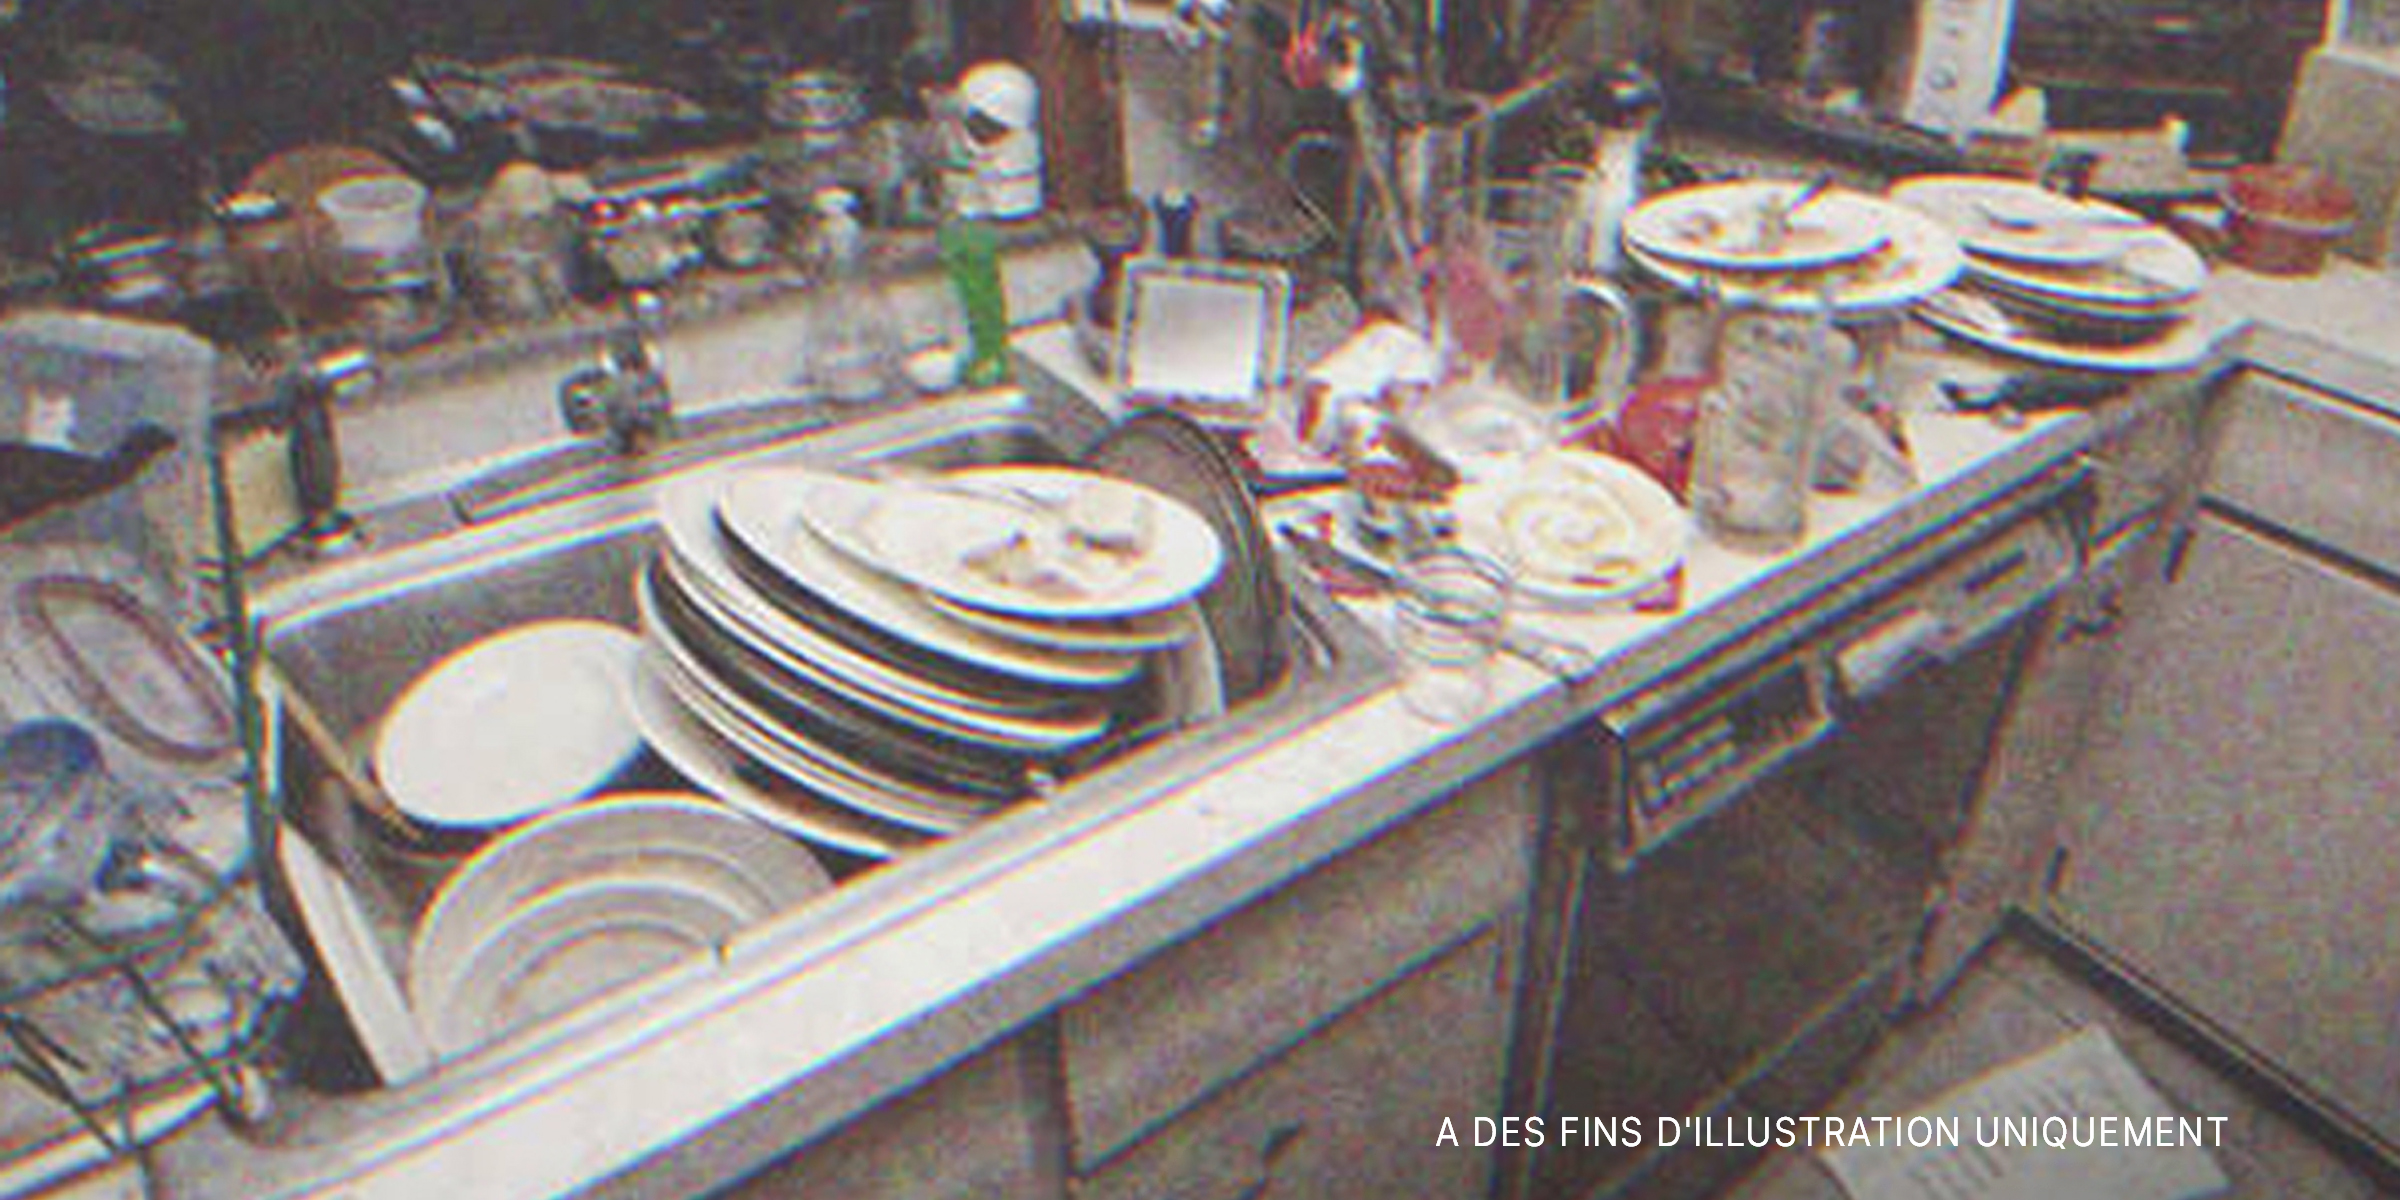 Évier débordant de vaisselle sale dans la cuisine | Source : Shutterstock